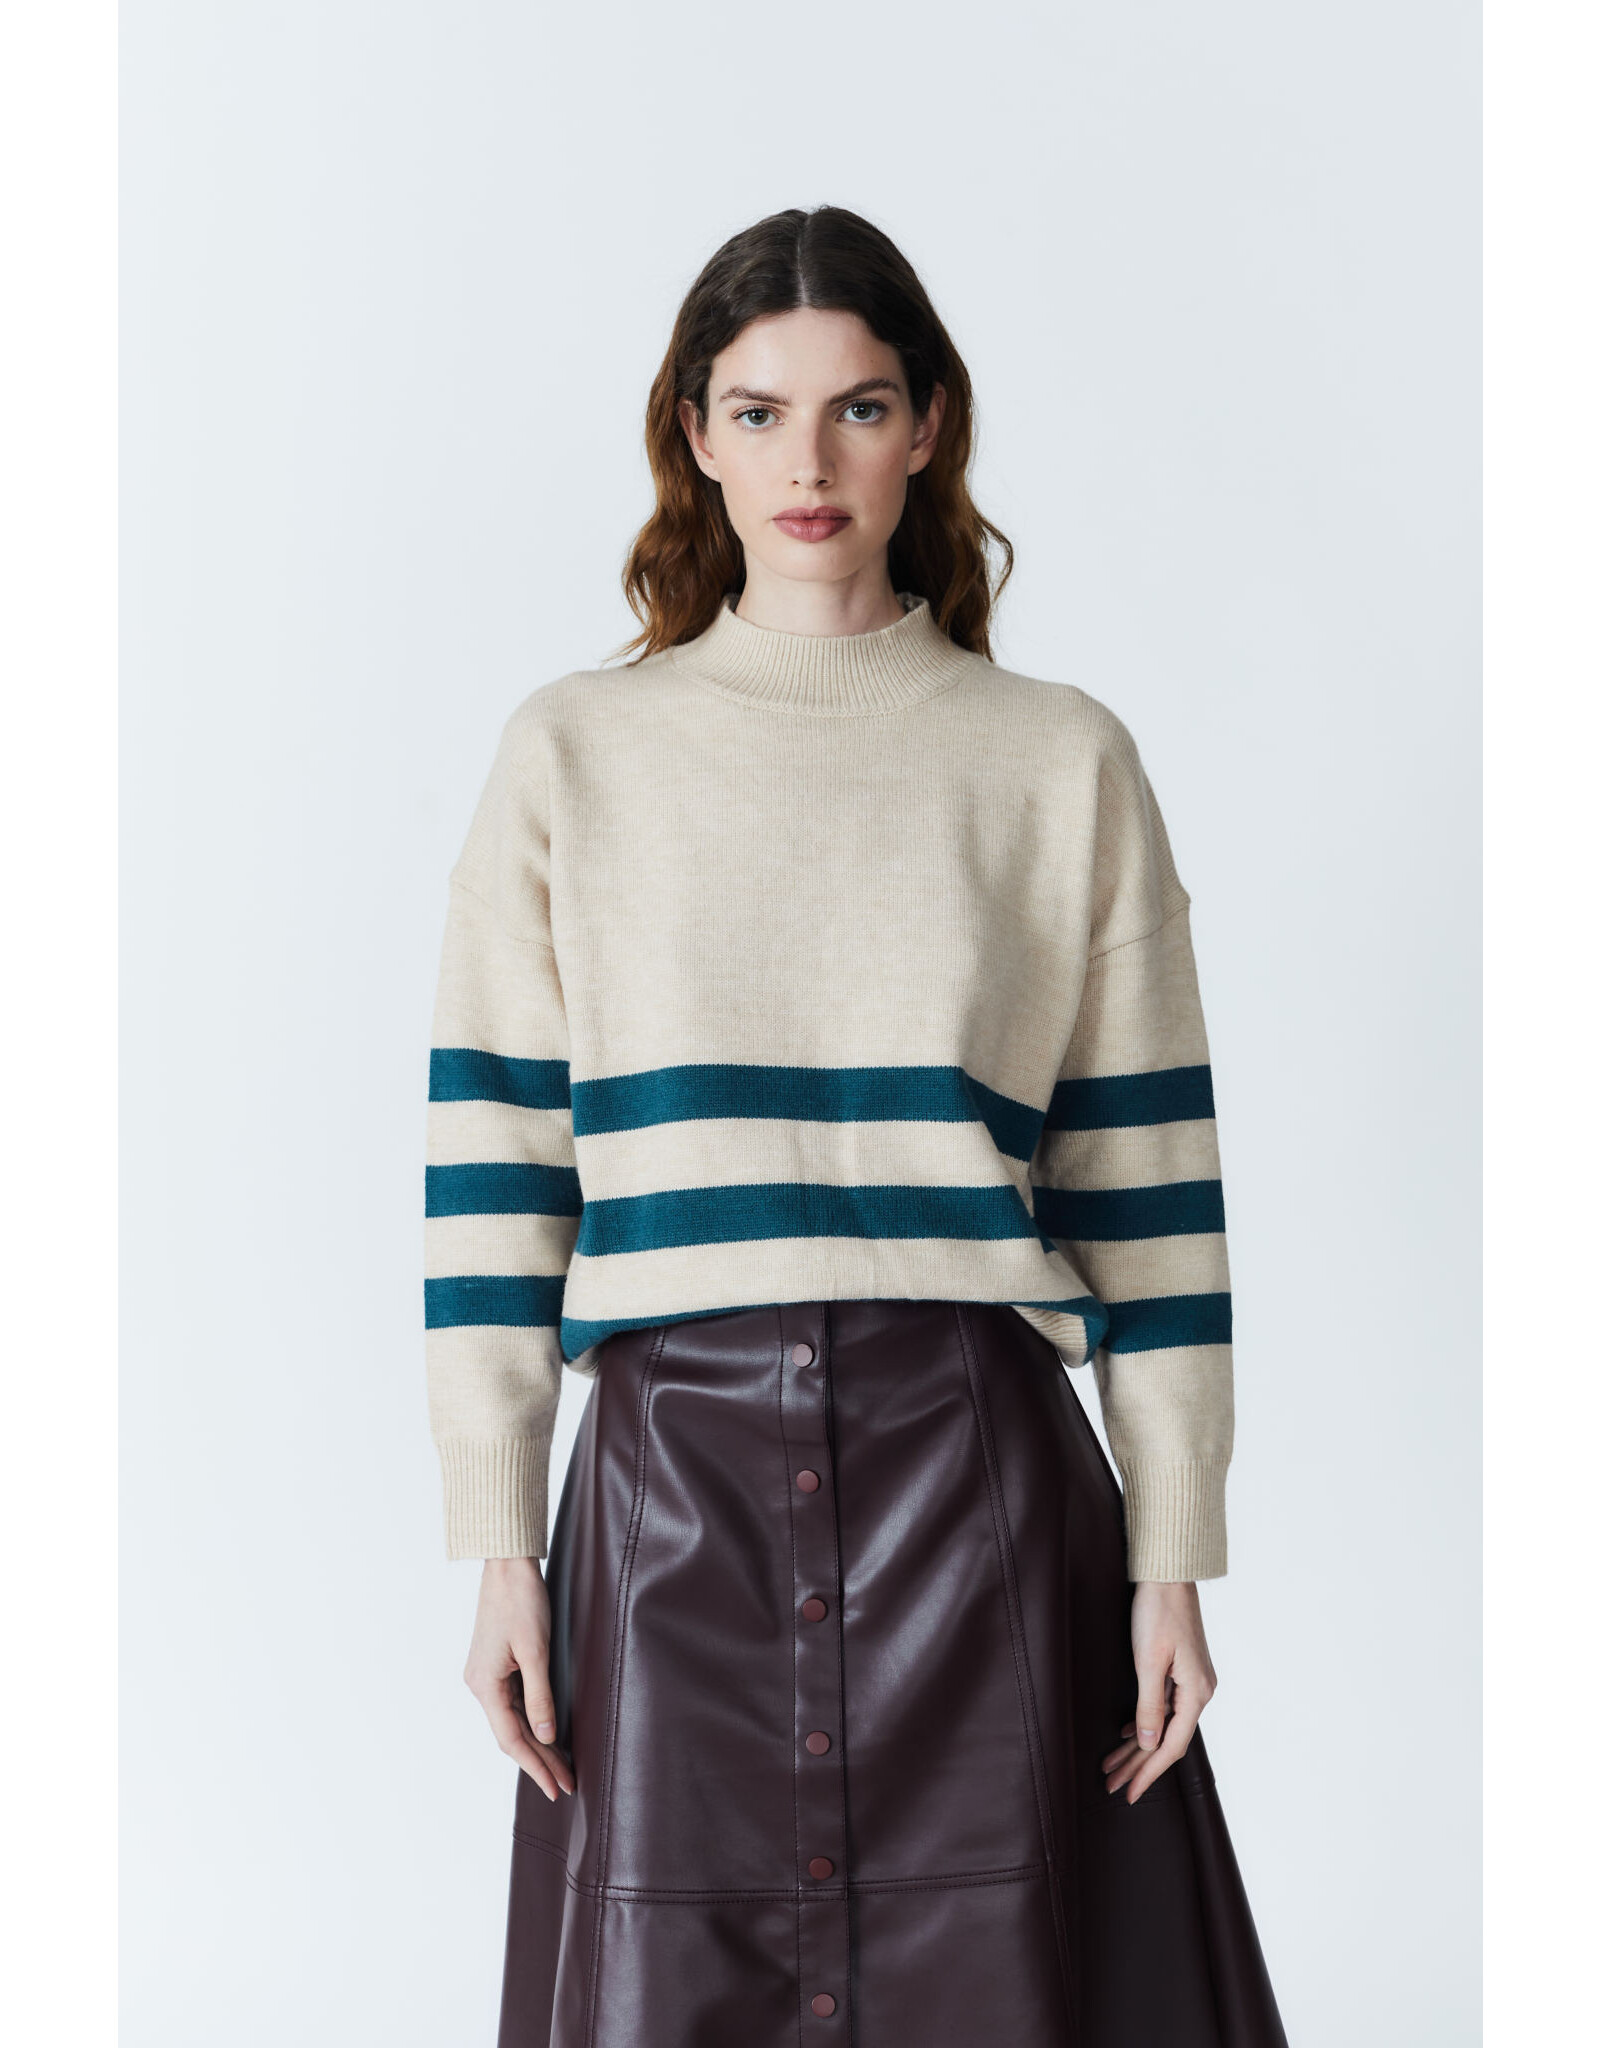 Deluc Deluc Atoms Striped Sweater